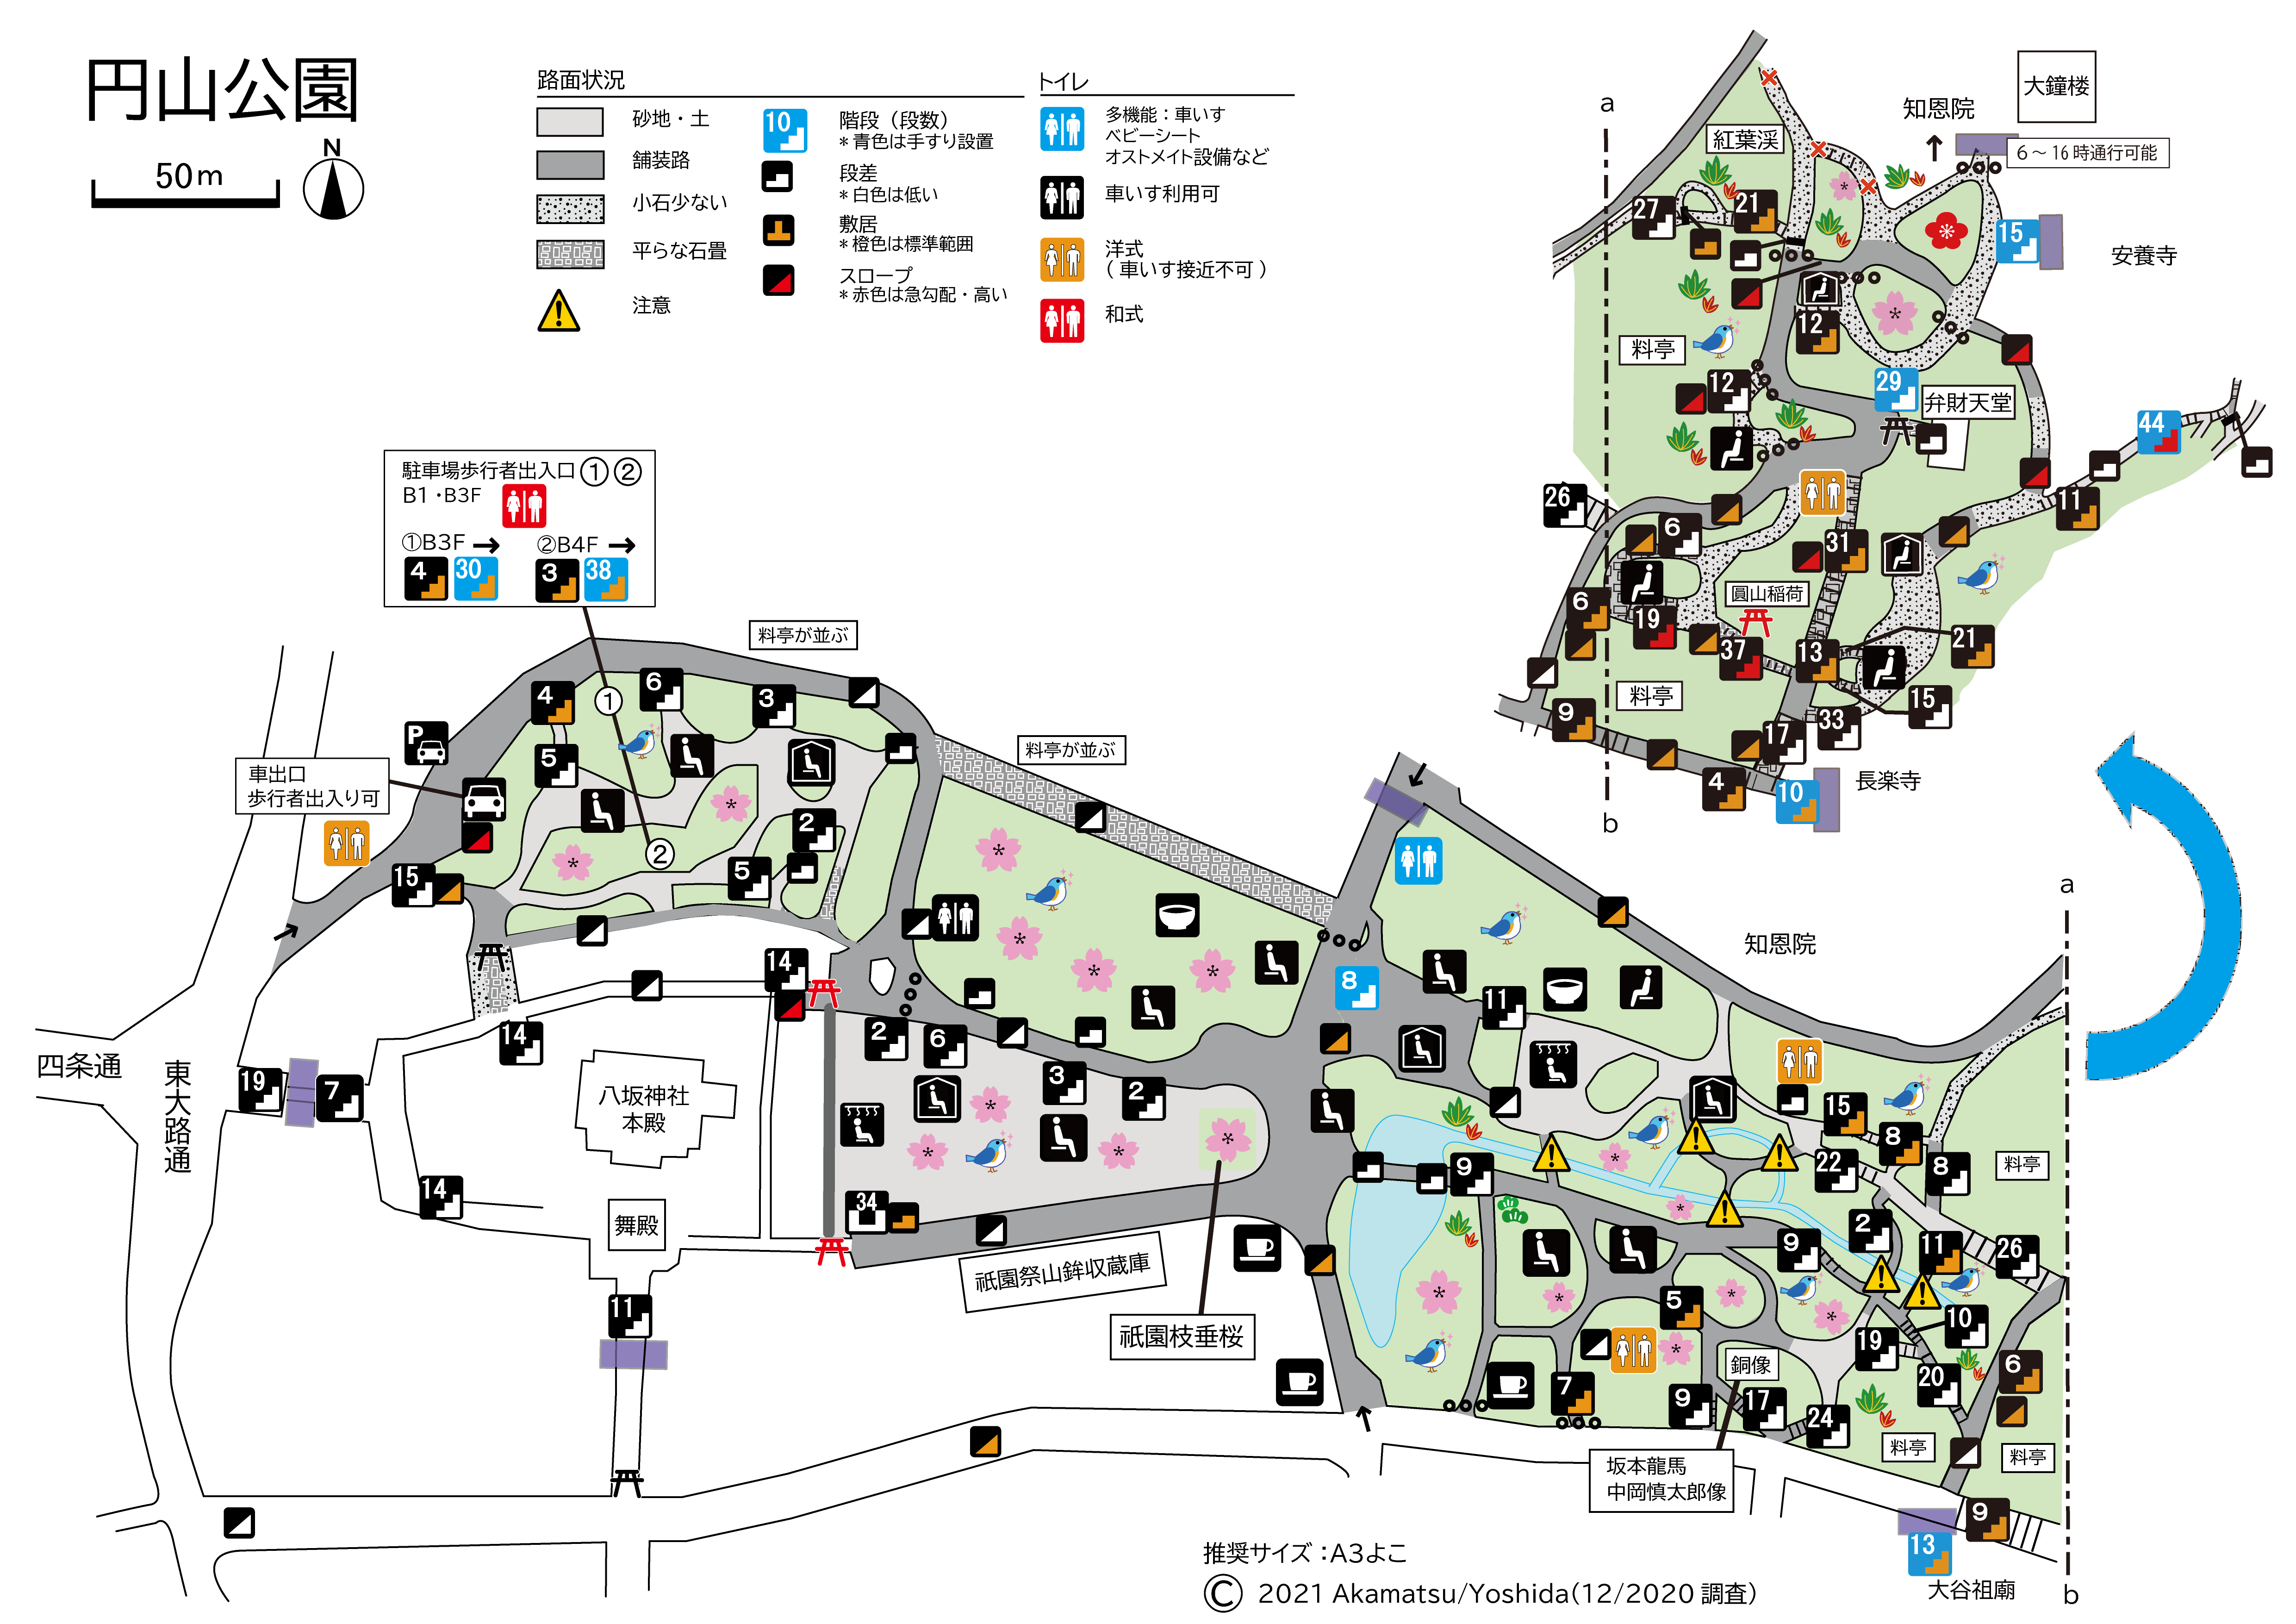 円山公園凡例入りマップ210106.png